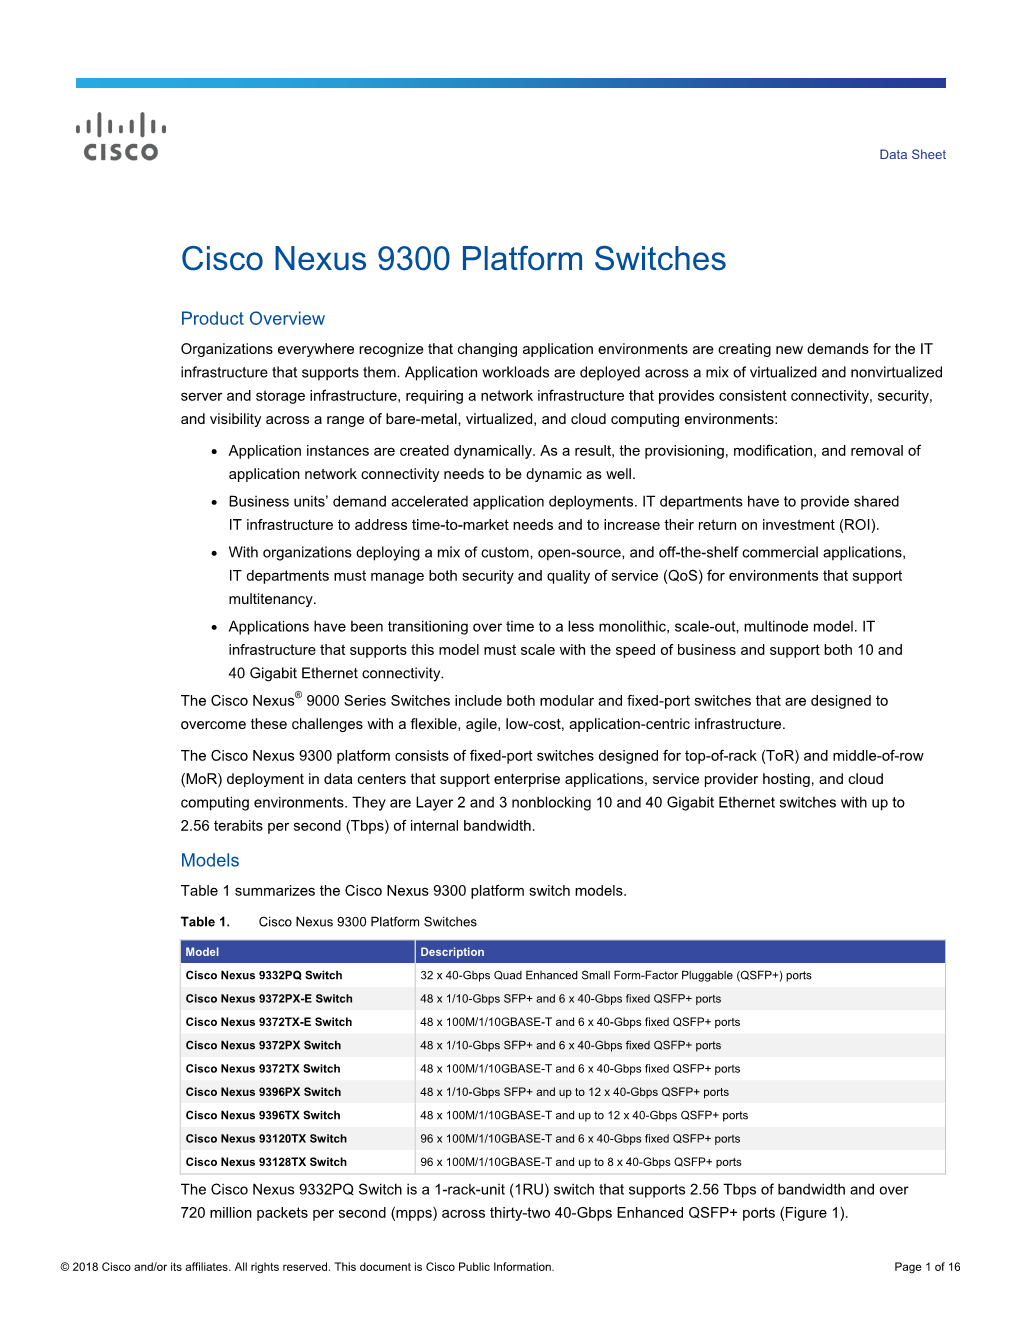 Cisco Nexus 9300 Platform Switches Data Sheet